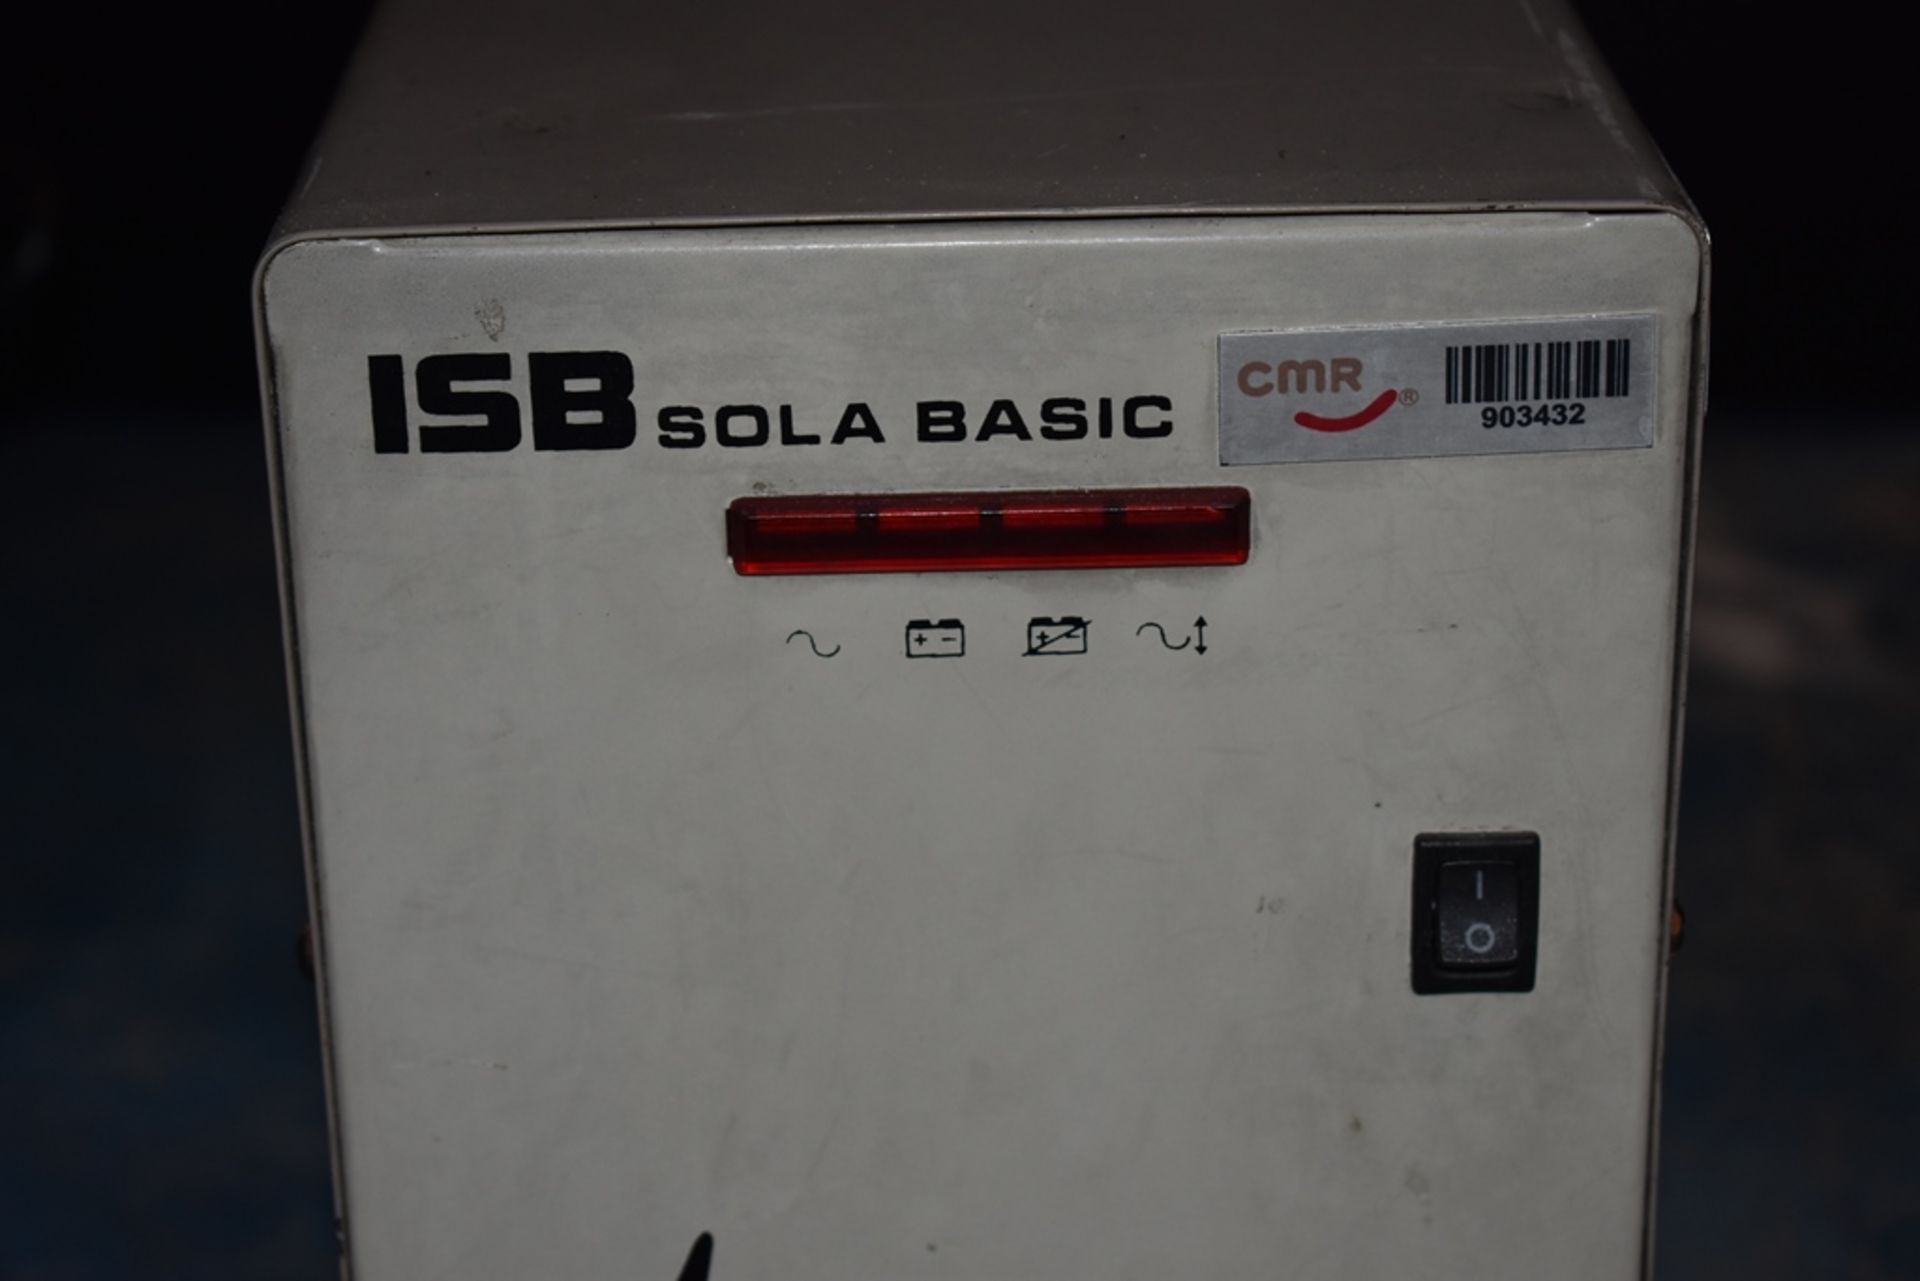 Dos reguladores de voltaje marca ISB Solabasic, modelo: XR-21-202, Series: E18F02675, E18H01516 - Image 8 of 17